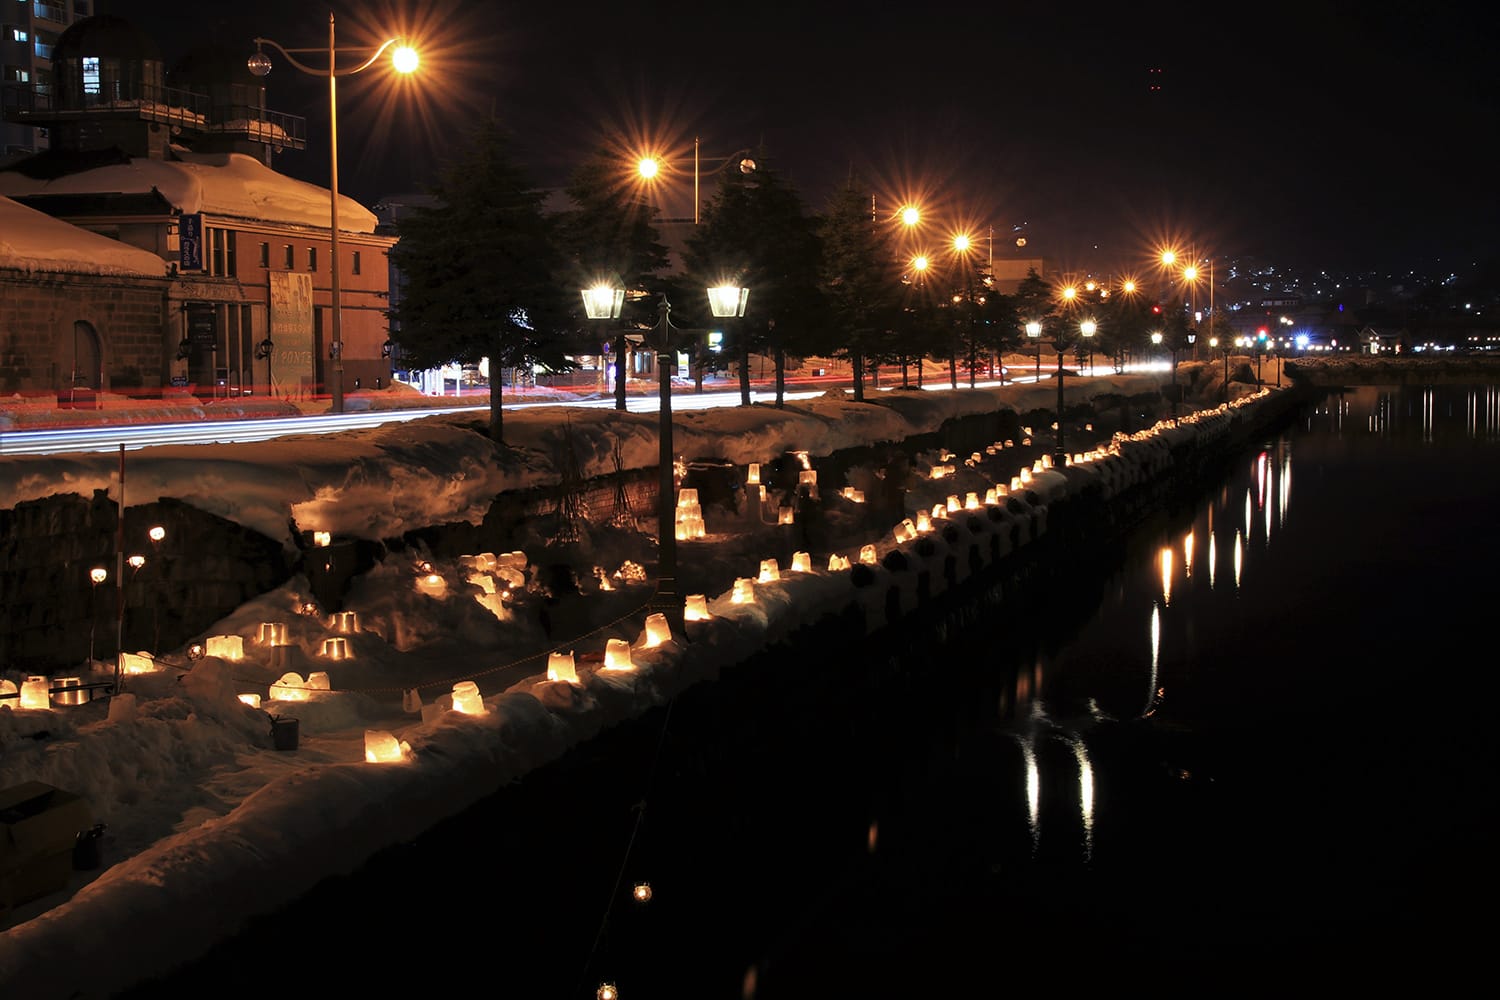 無数のキャンドルに彩られた夜の運河は、普段以上に幻想的でした。